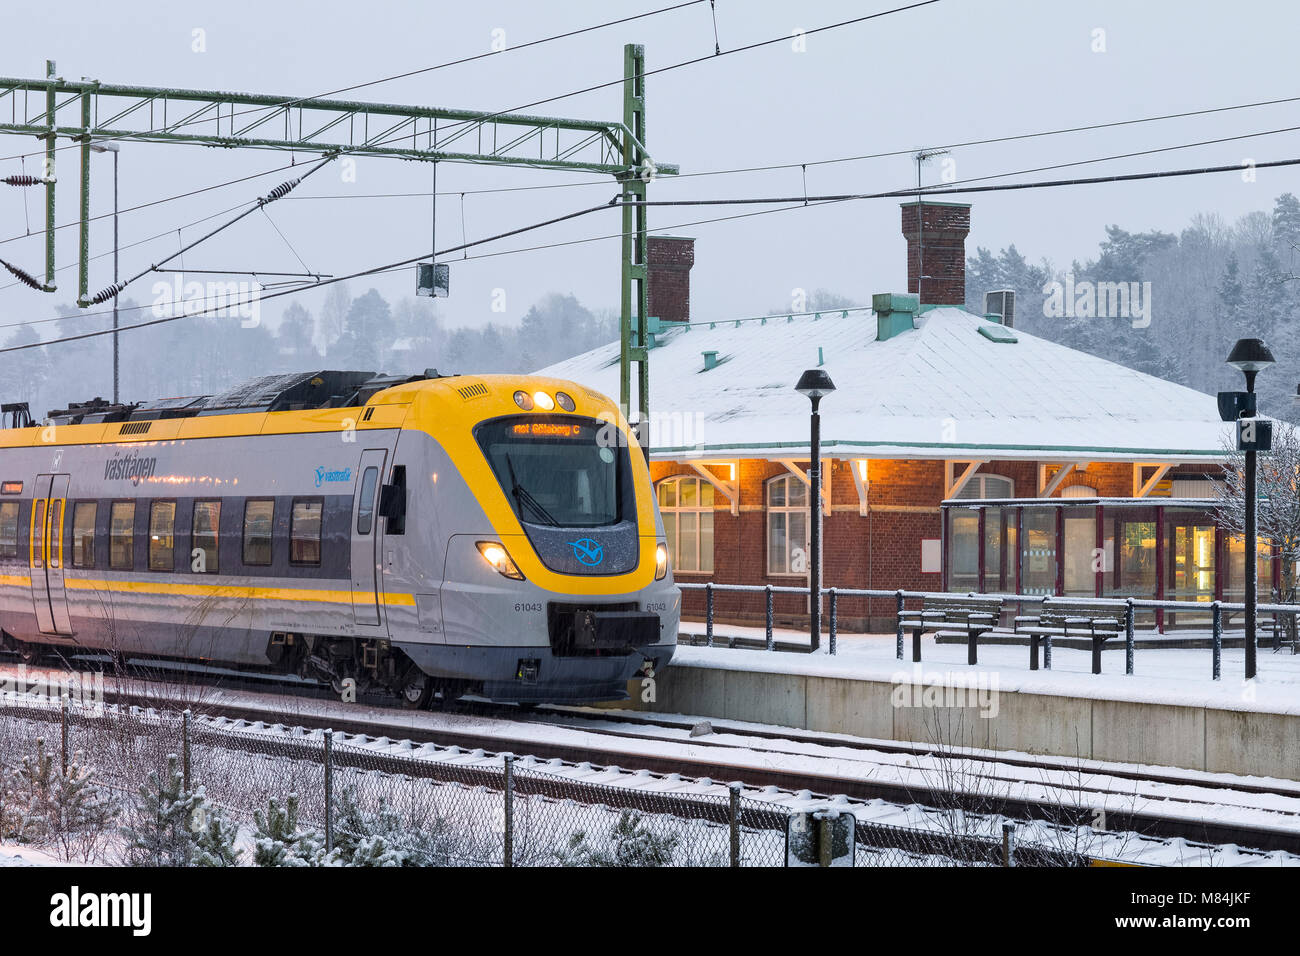 FLODA, Svezia - 16 febbraio: Moderna commuter rail treno passeggeri o ferrovia suburbana a stazione ferroviaria di neve durante l'inverno modello di rilascio: No. Proprietà di rilascio: No. Foto Stock